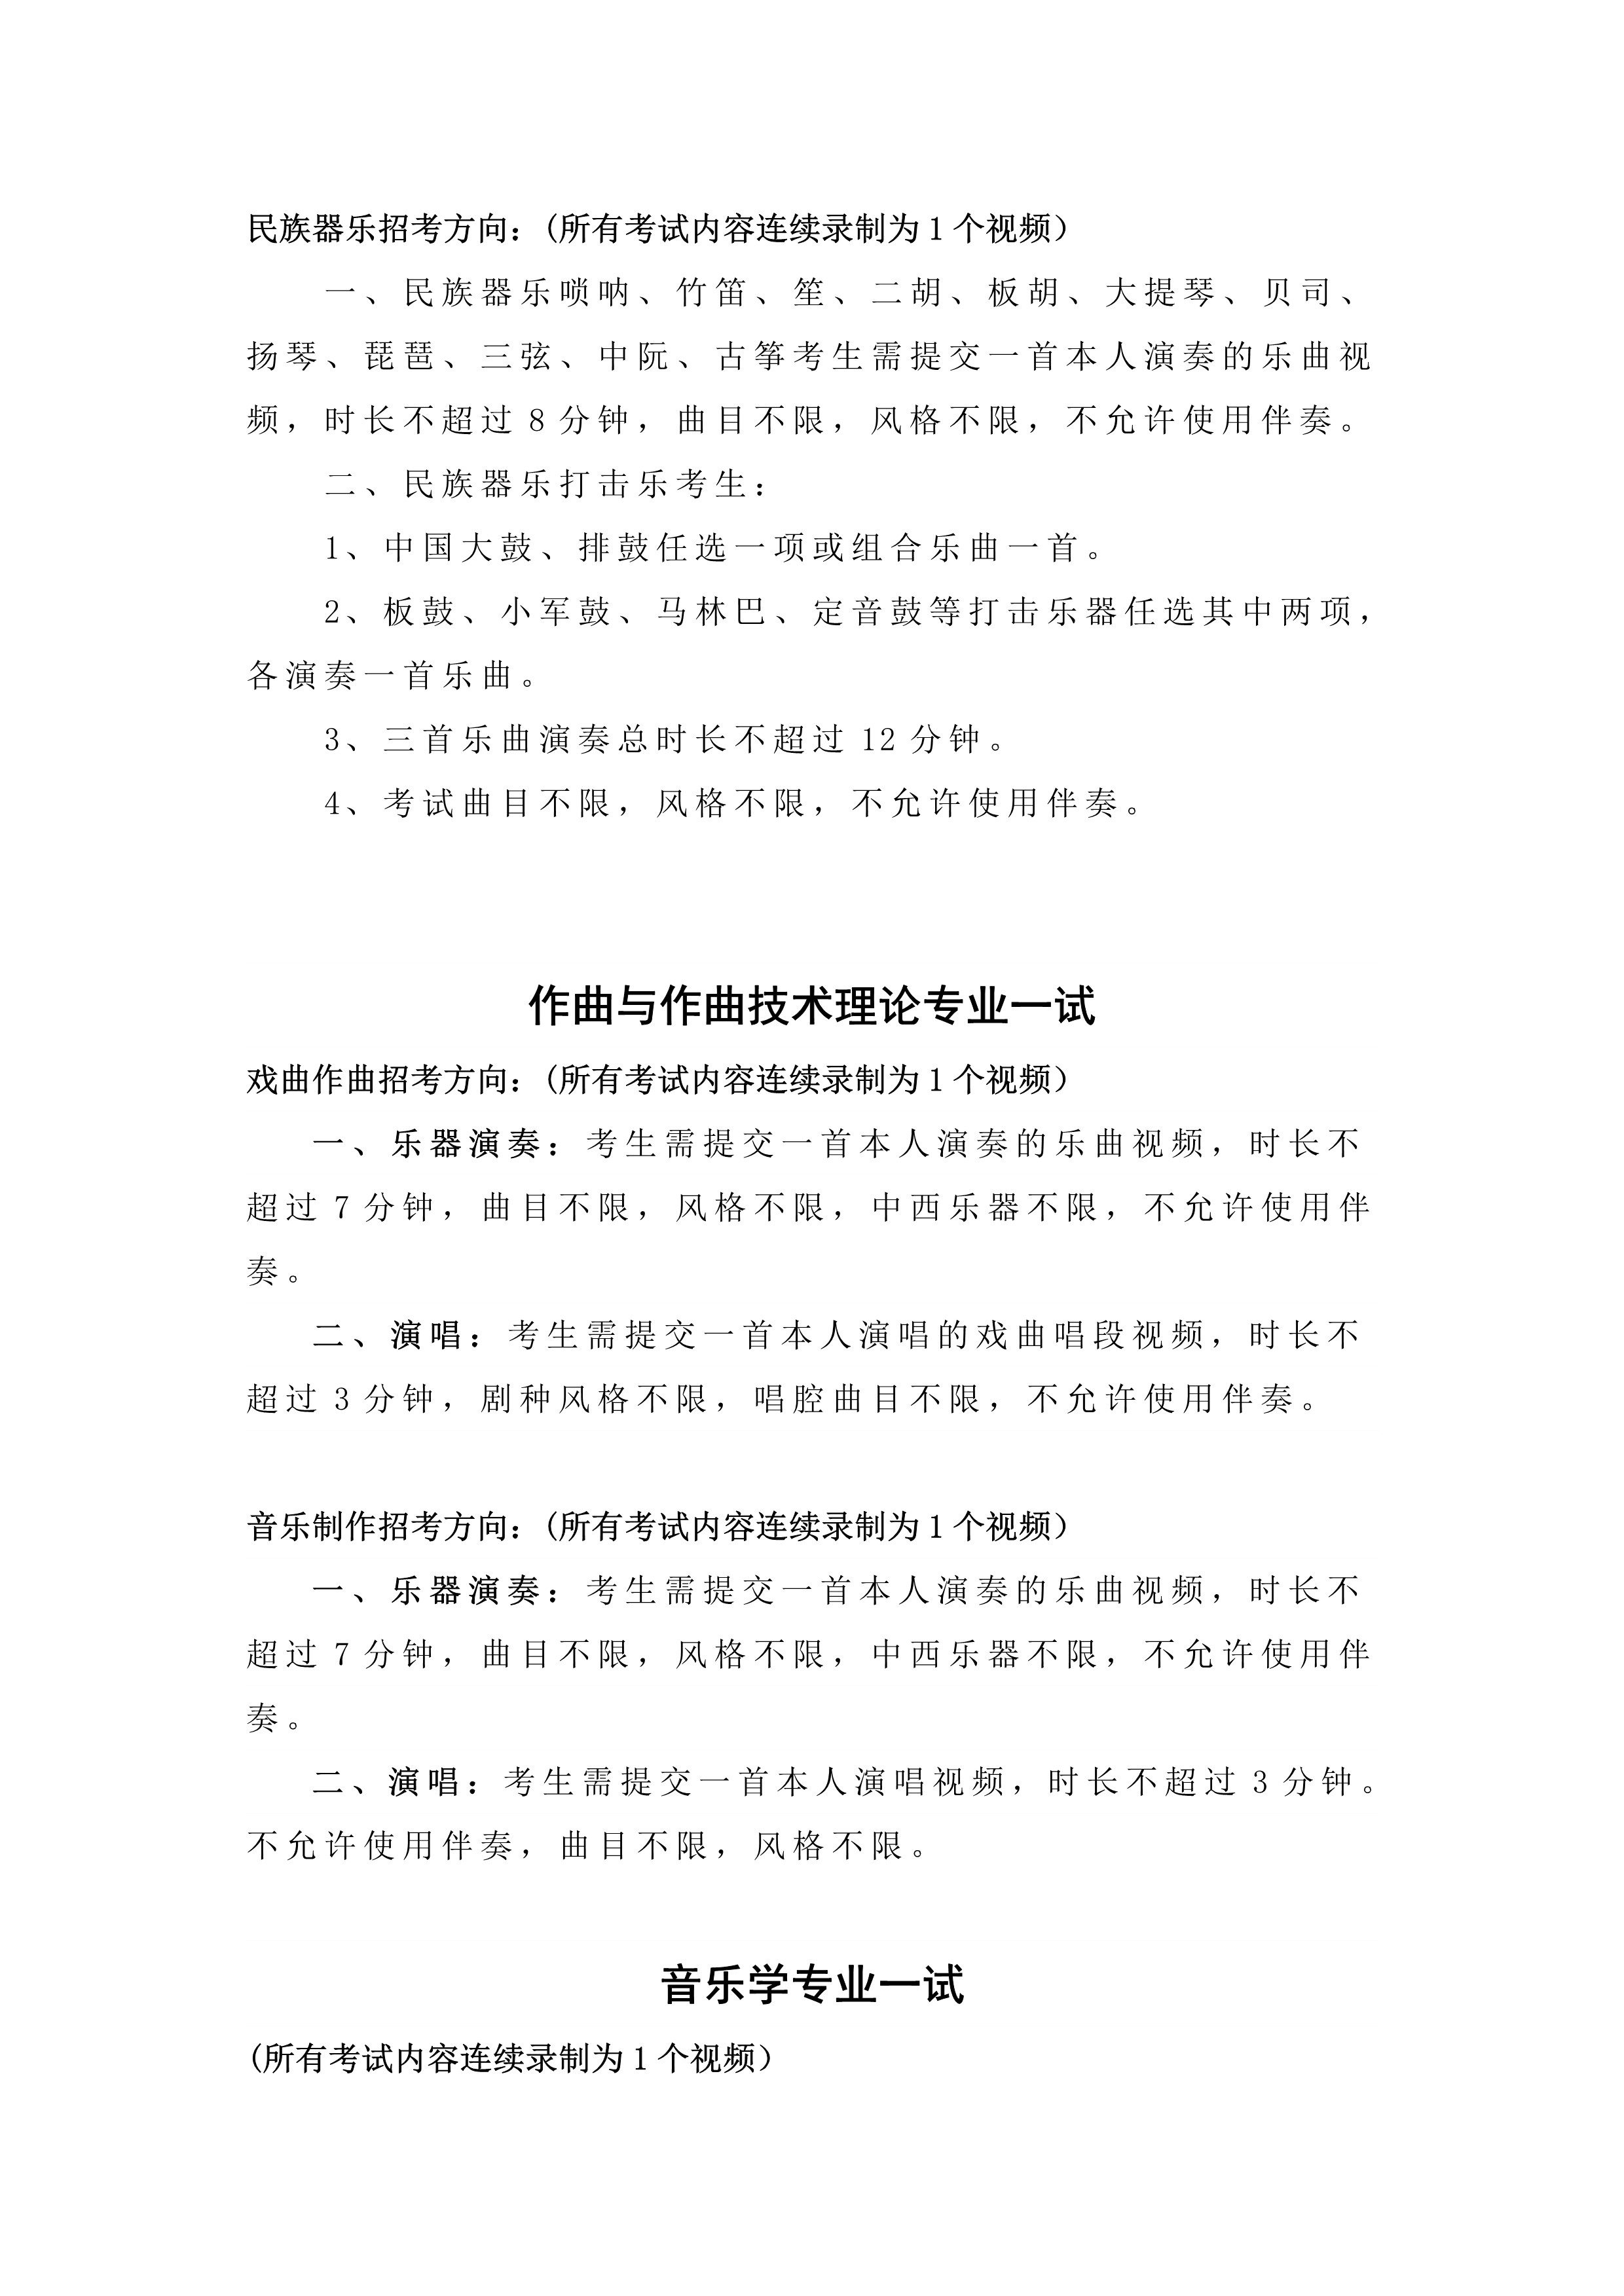 中国戏曲学院2023年本科招生音乐系（提交视频）专业考试内容与要求_2.jpg